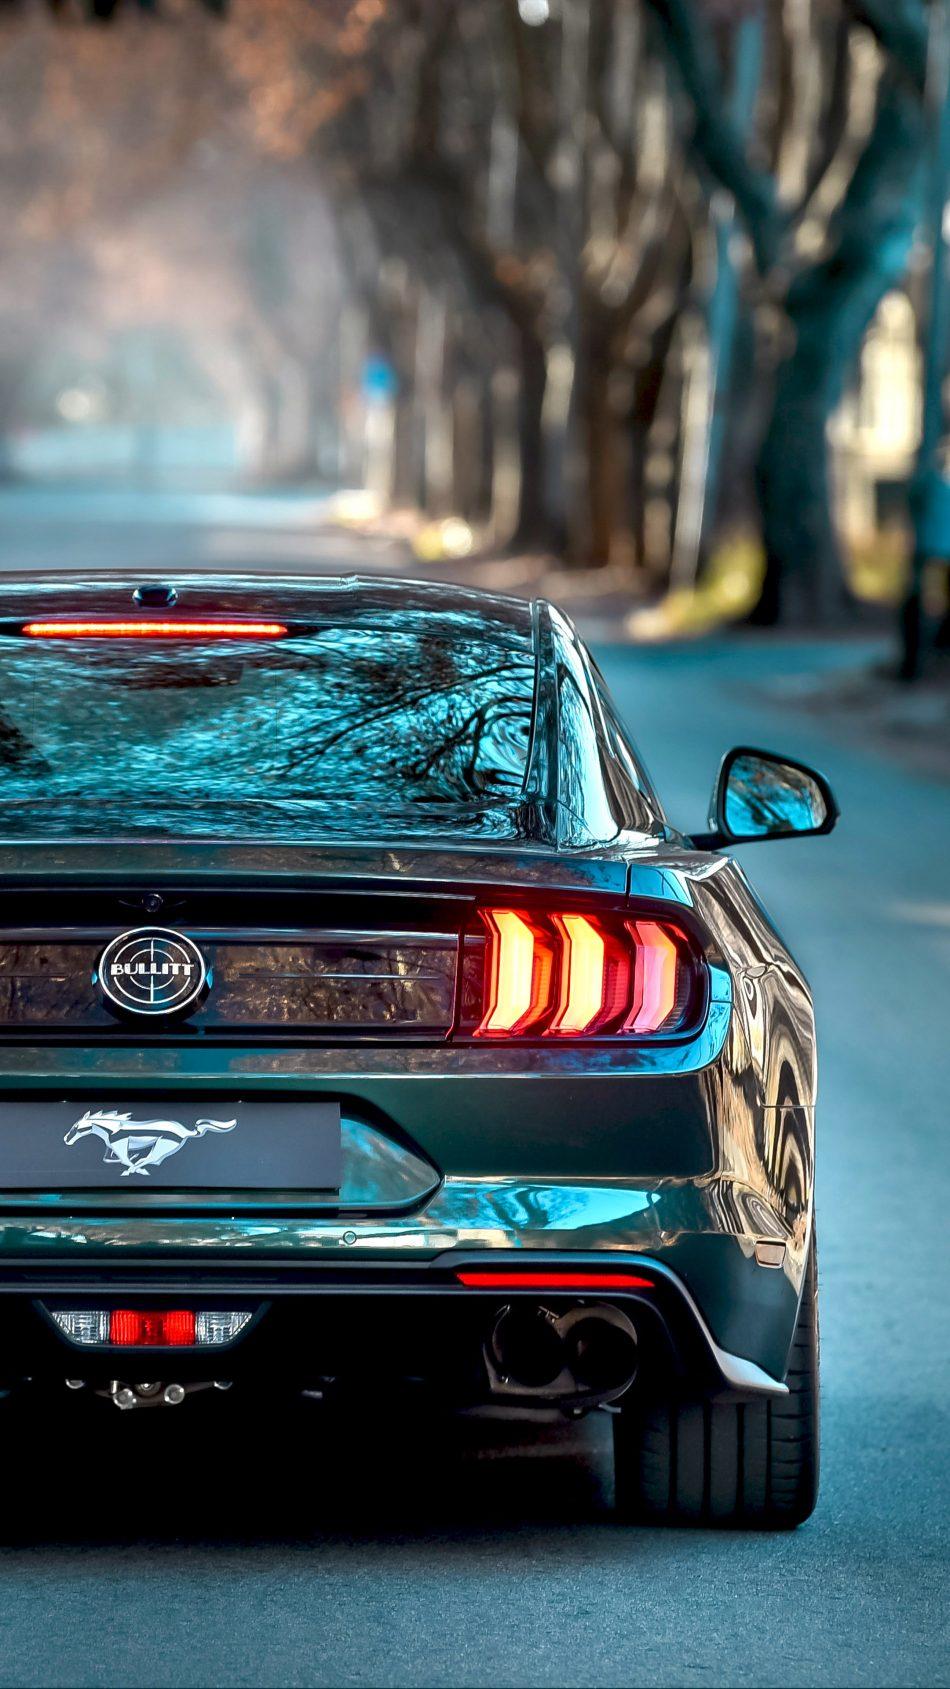 Ford Mustang Bullitt 2019 4k Ultra Hd Mobile Wallpapers